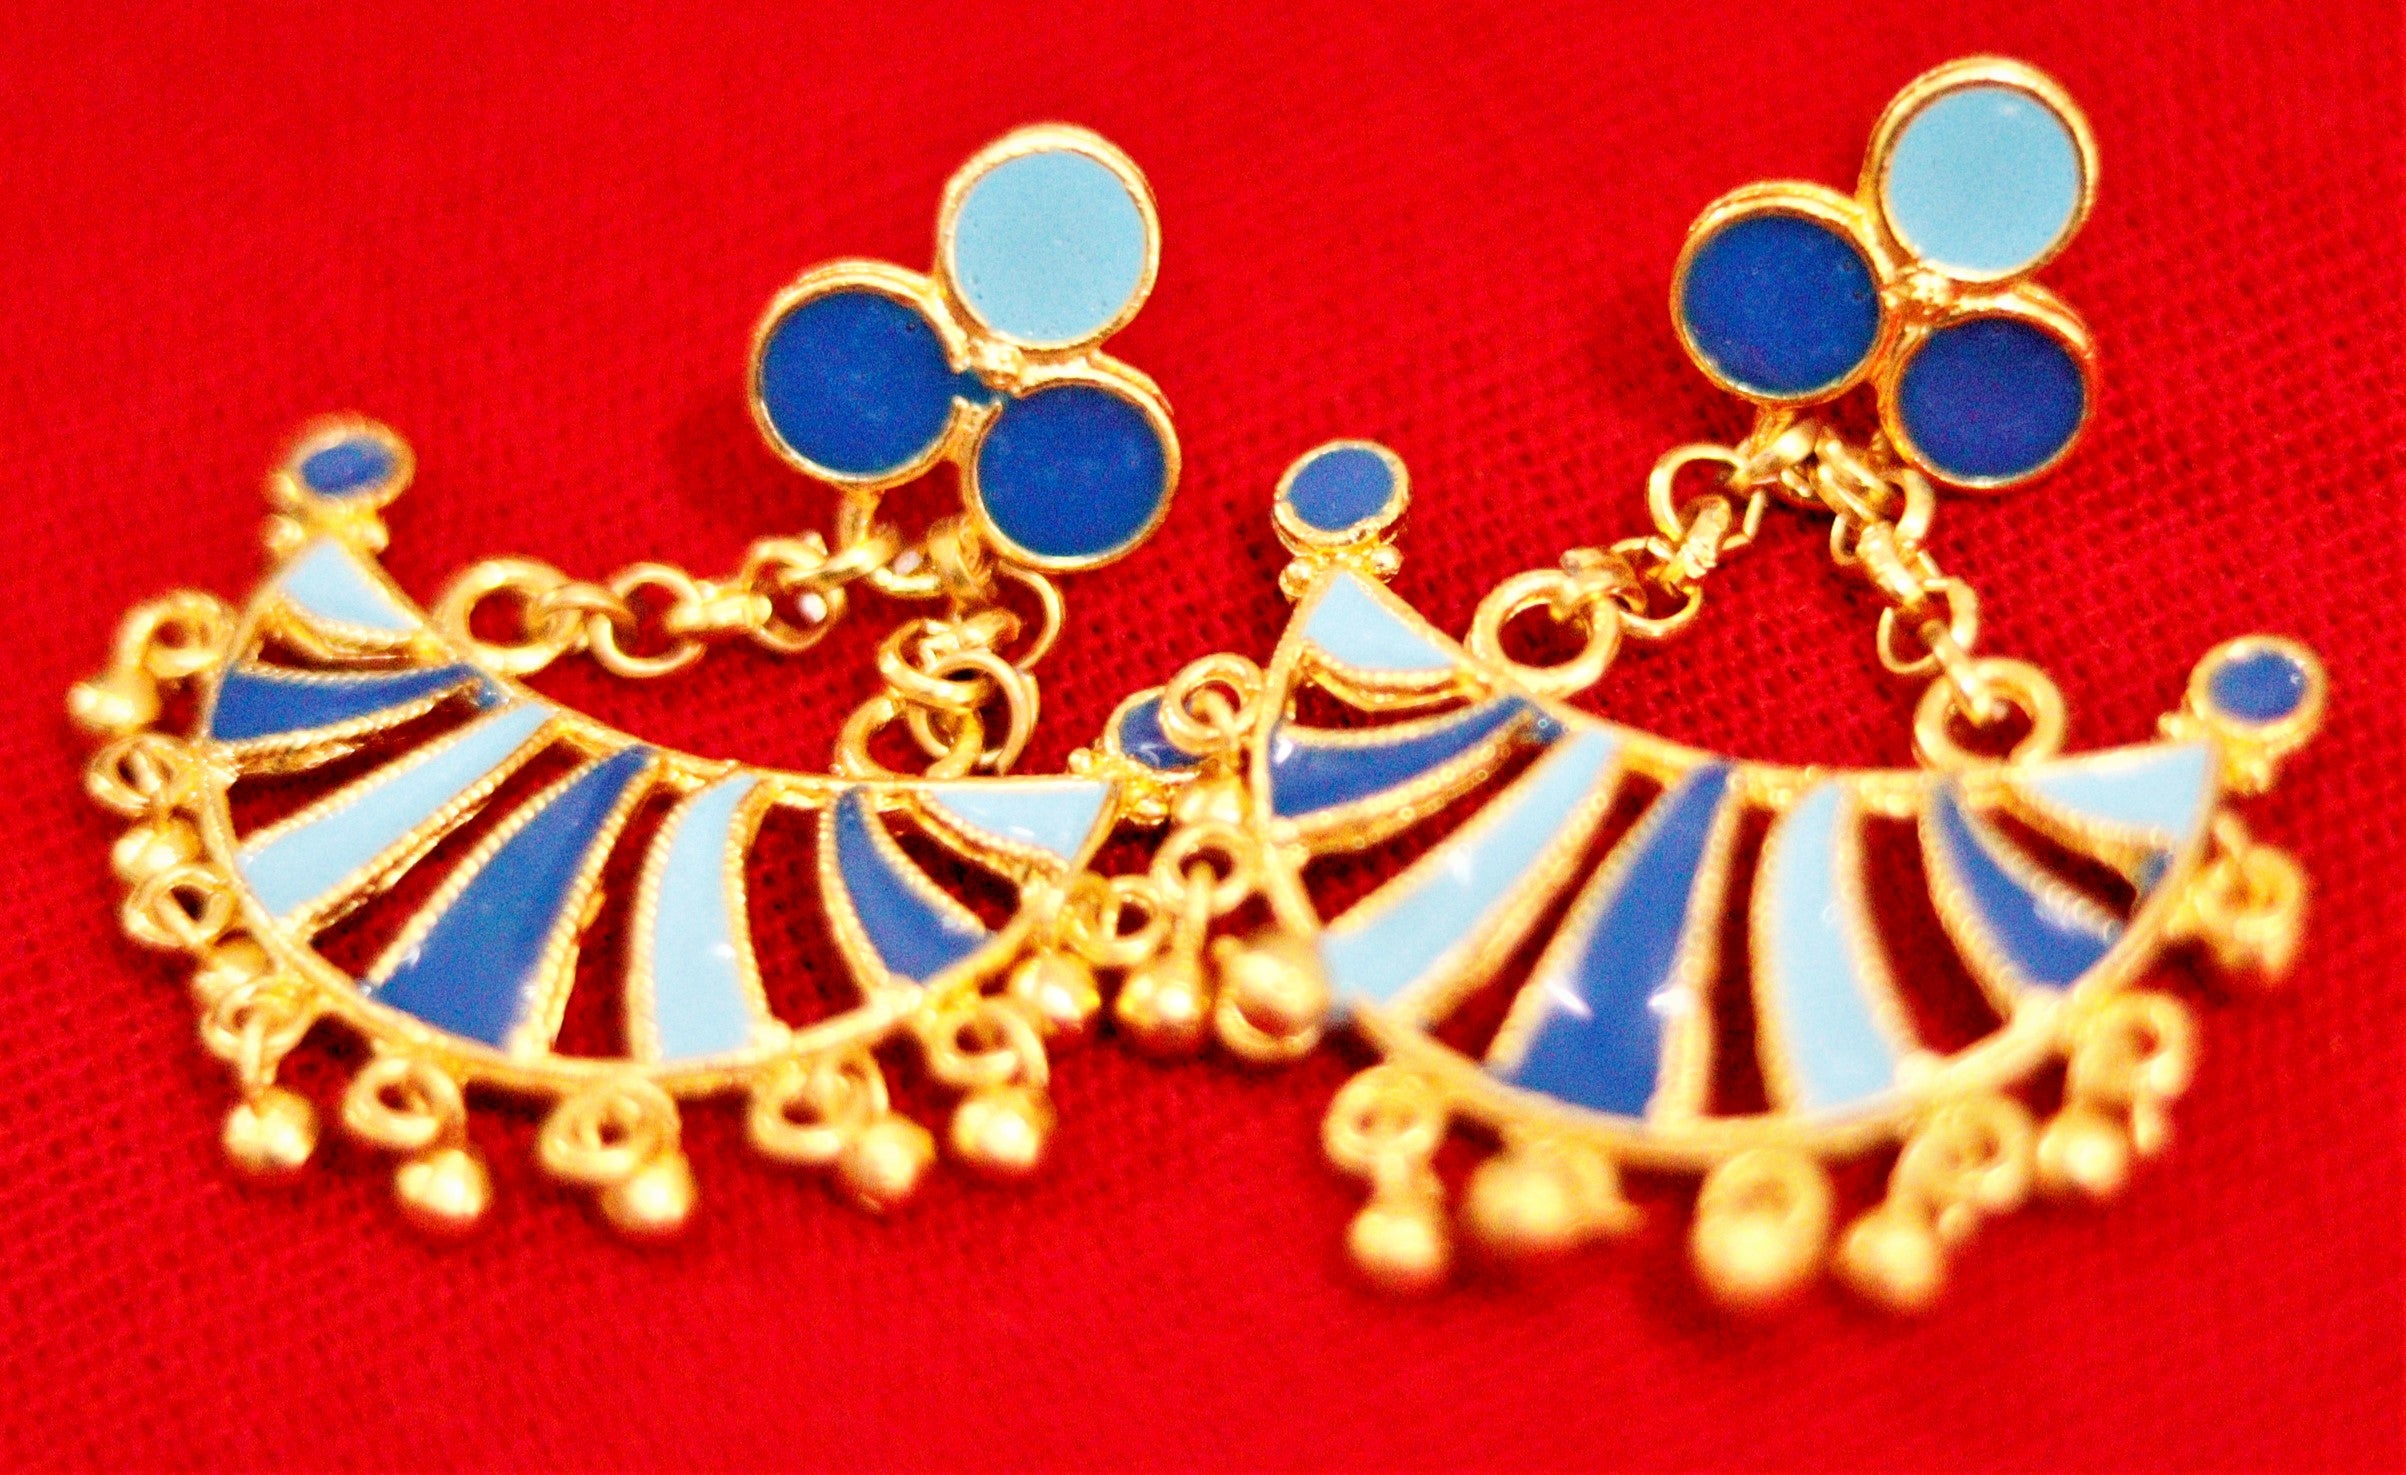 Premium Gold finish Assamese Chain set